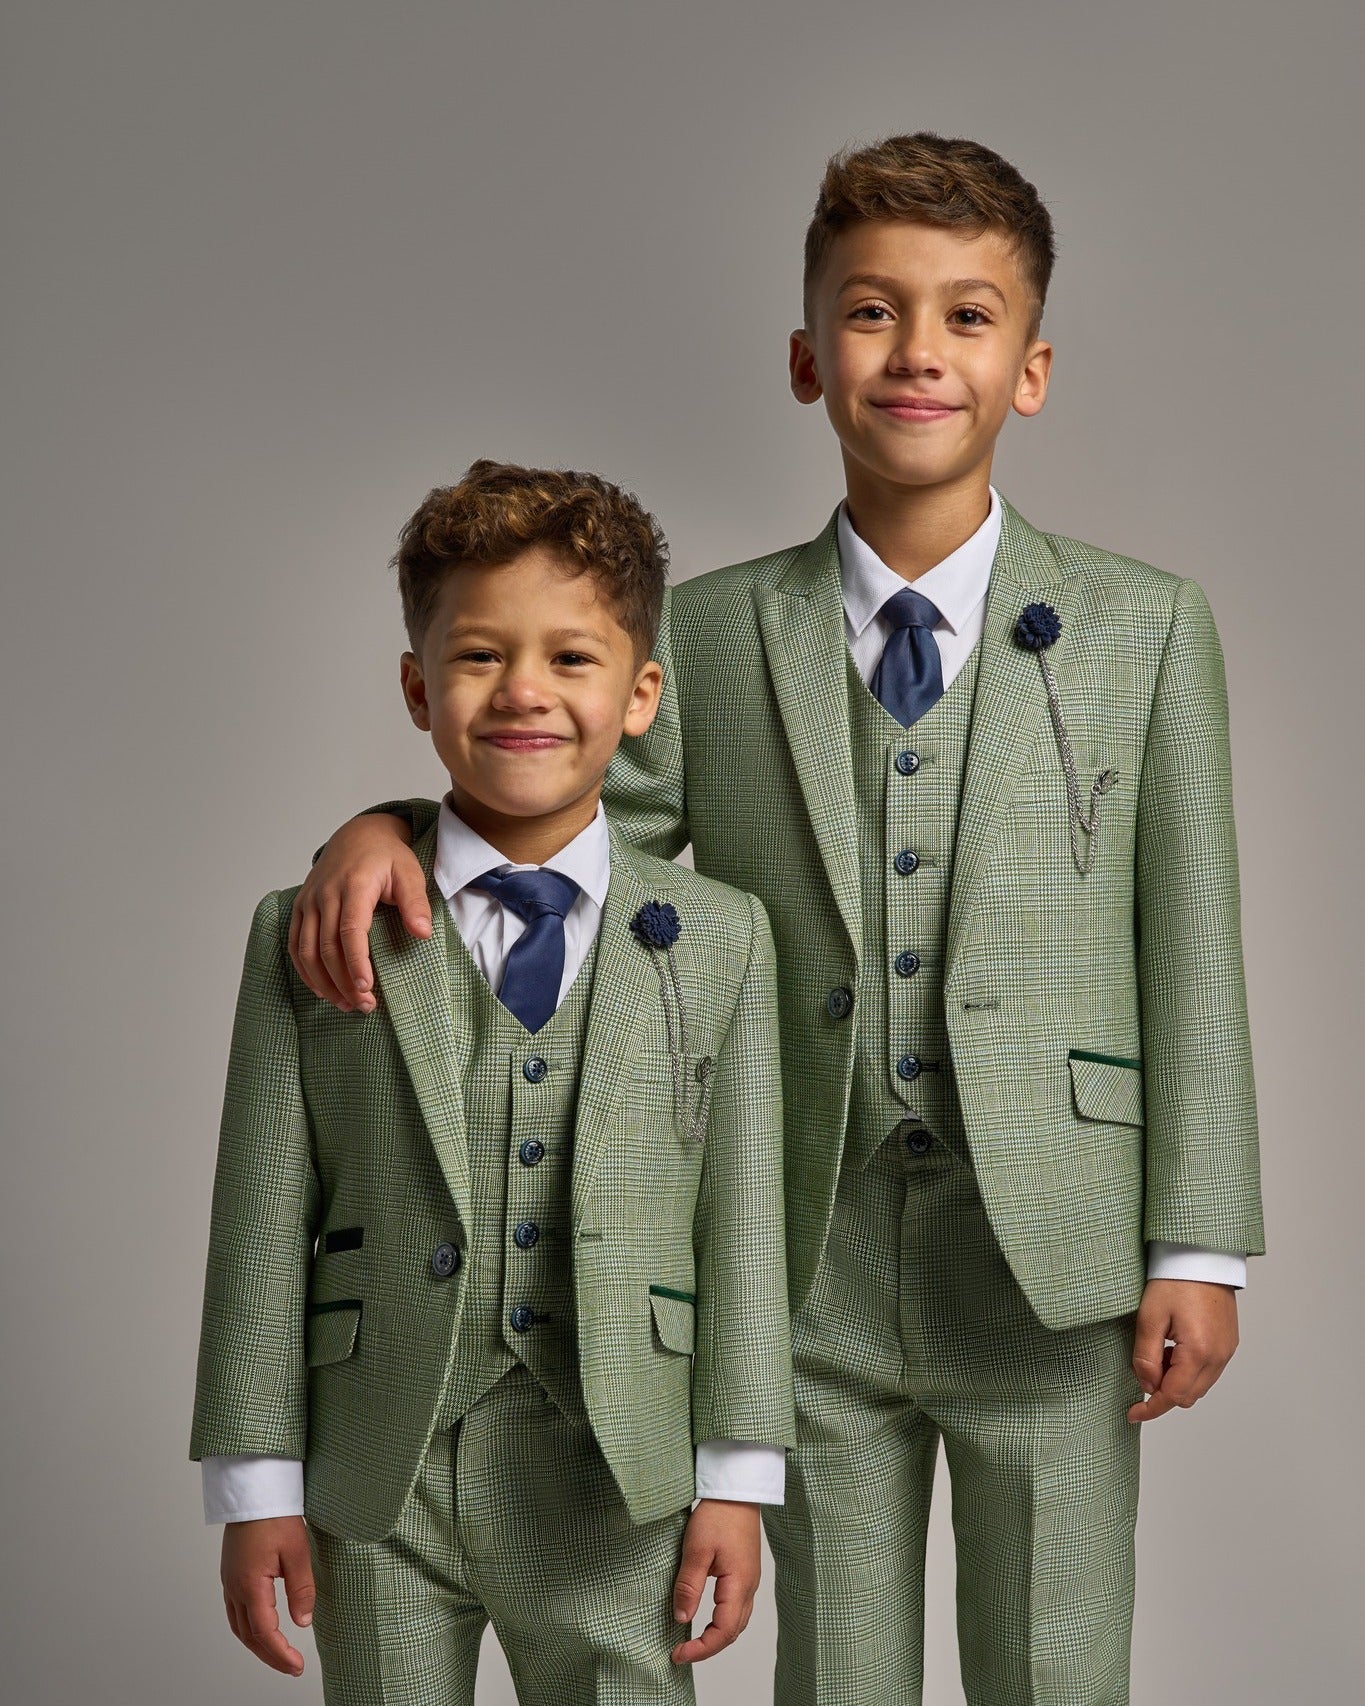 Boys Suits